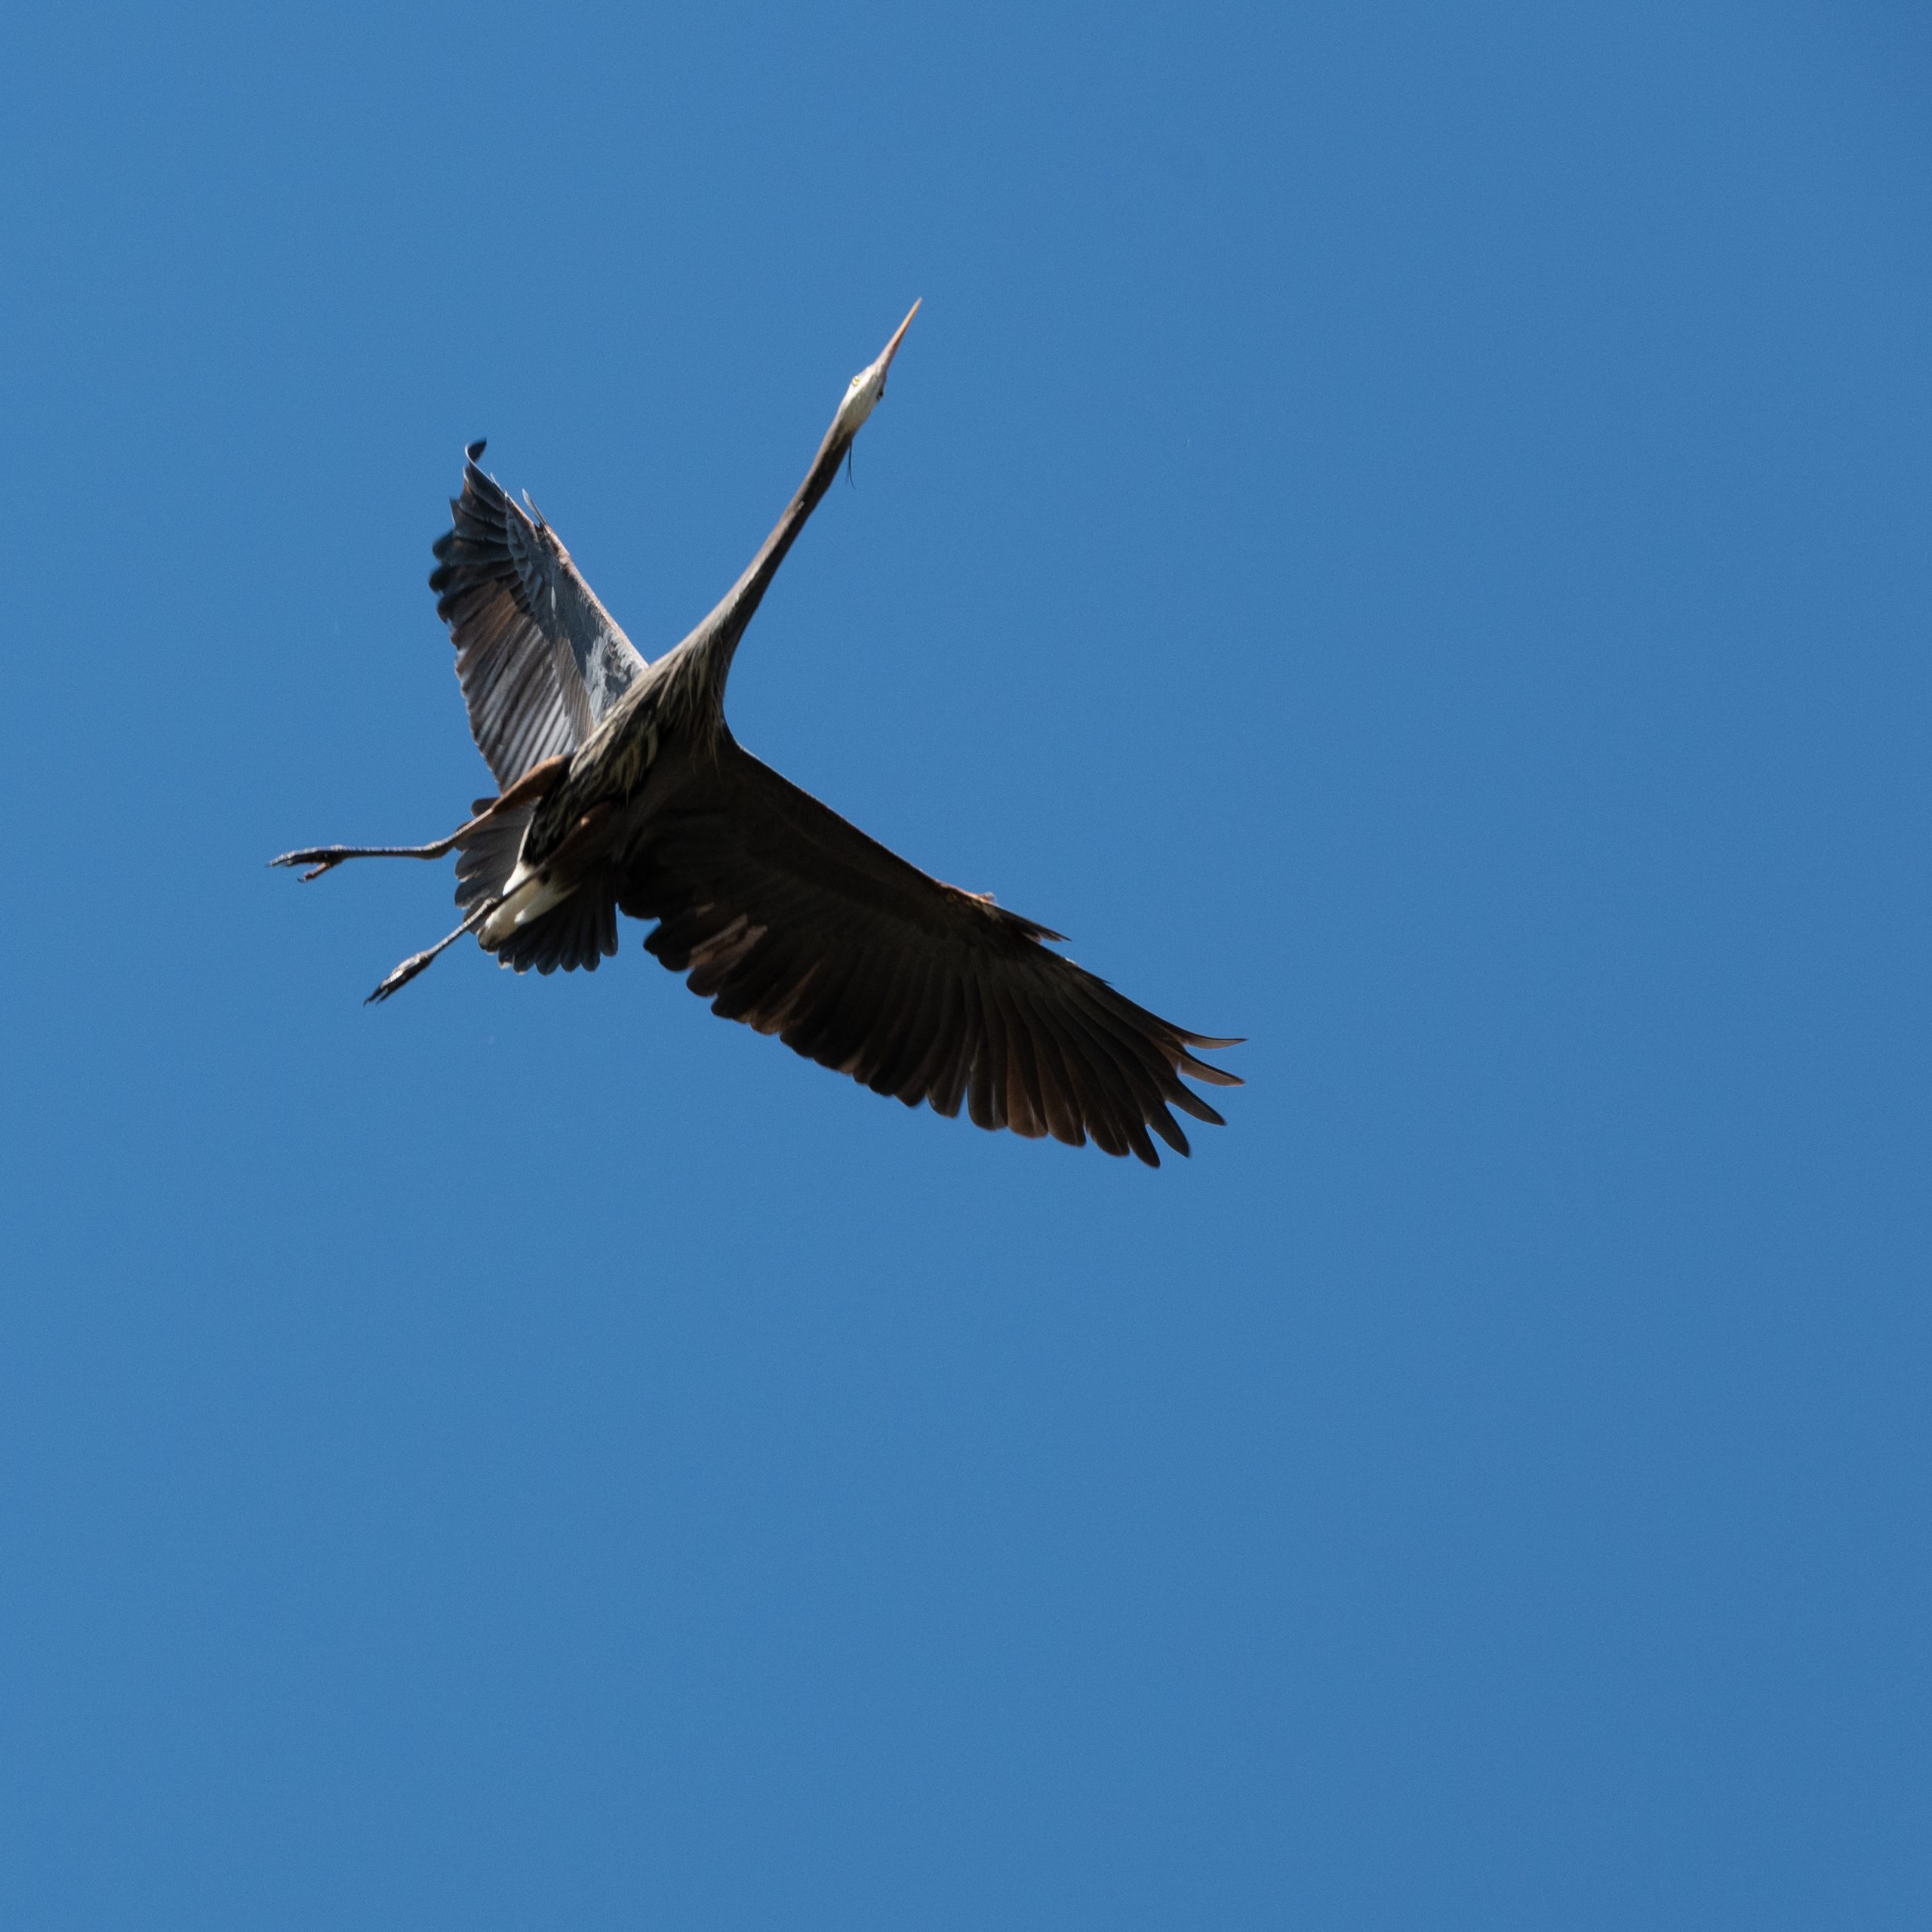 Blue Heron caught in mid-flight at Deer Lake in Burnaby, BC